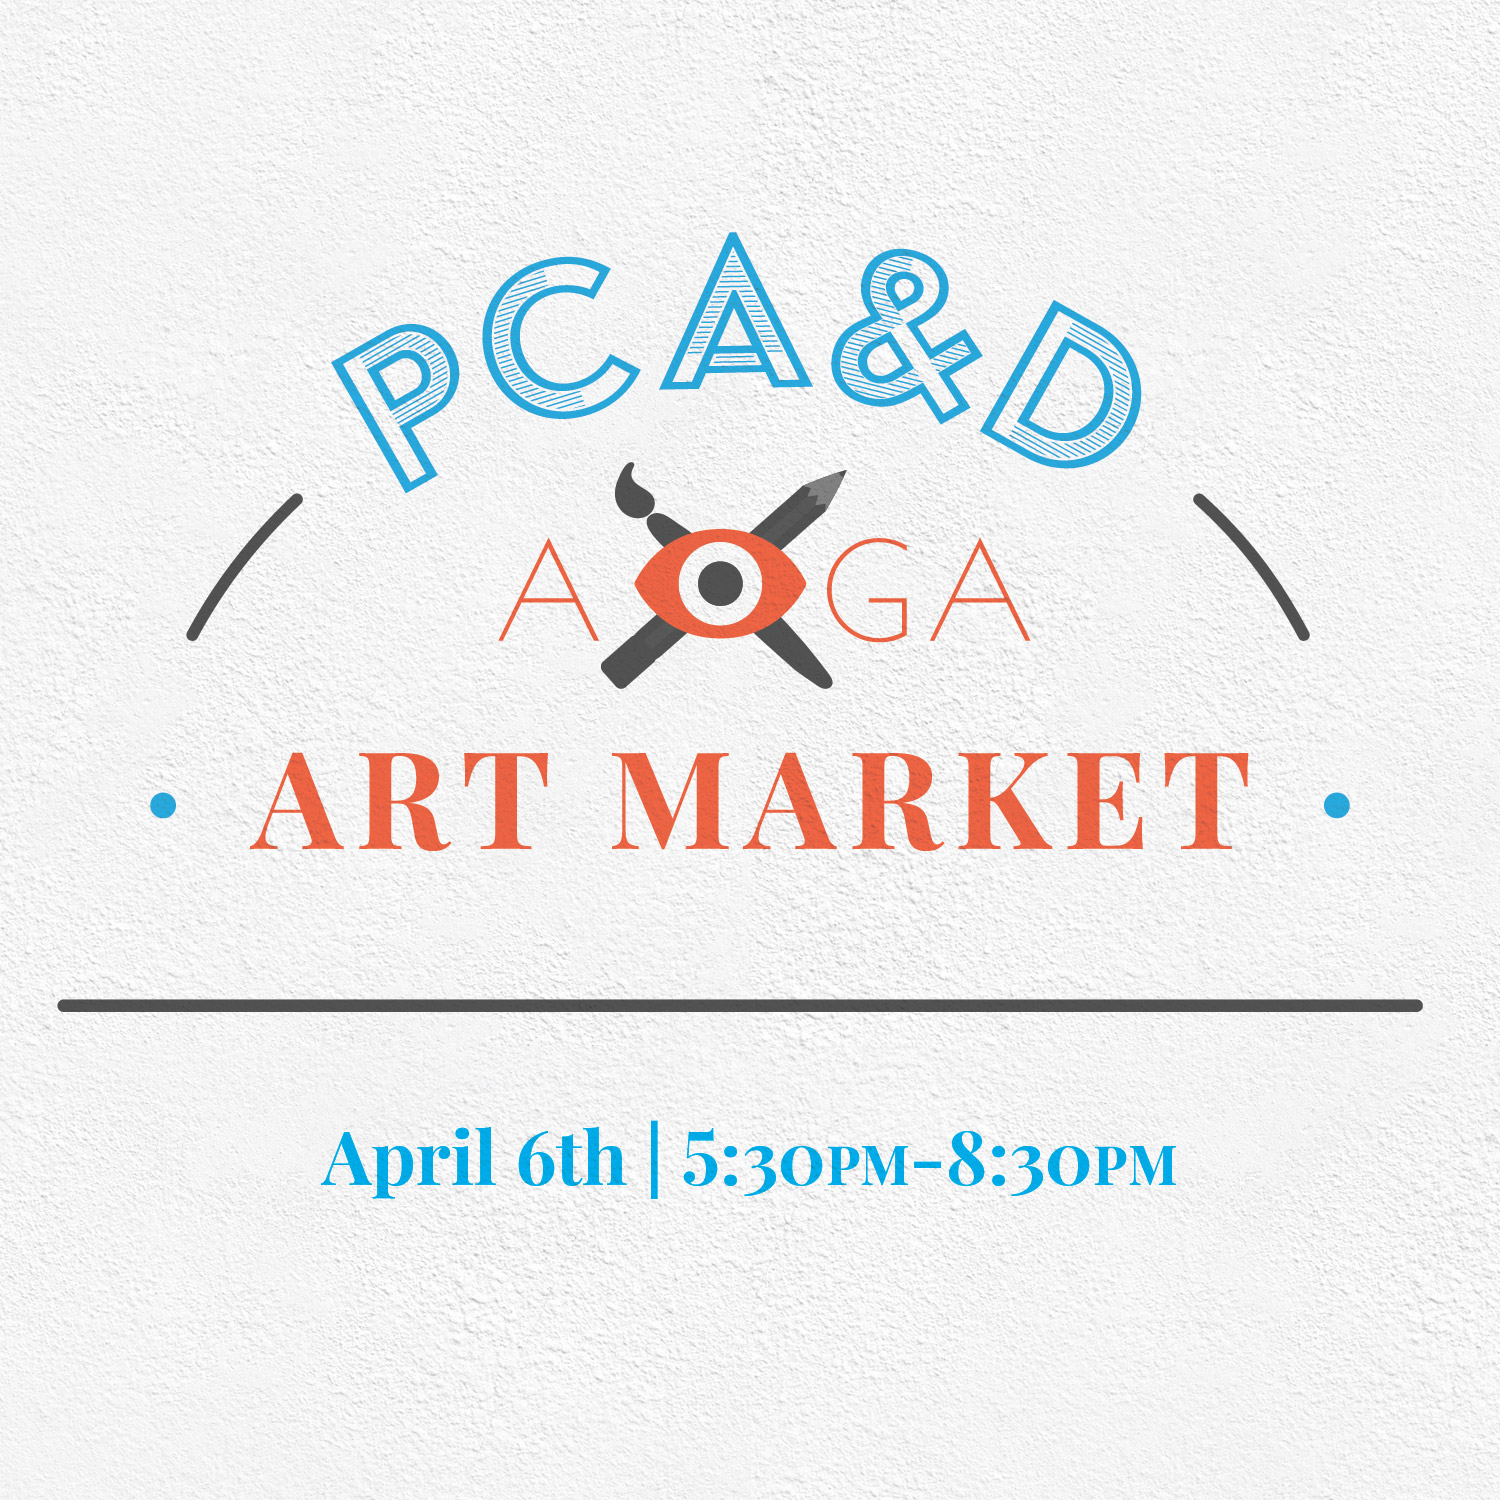 PCA&D Art Market April 6